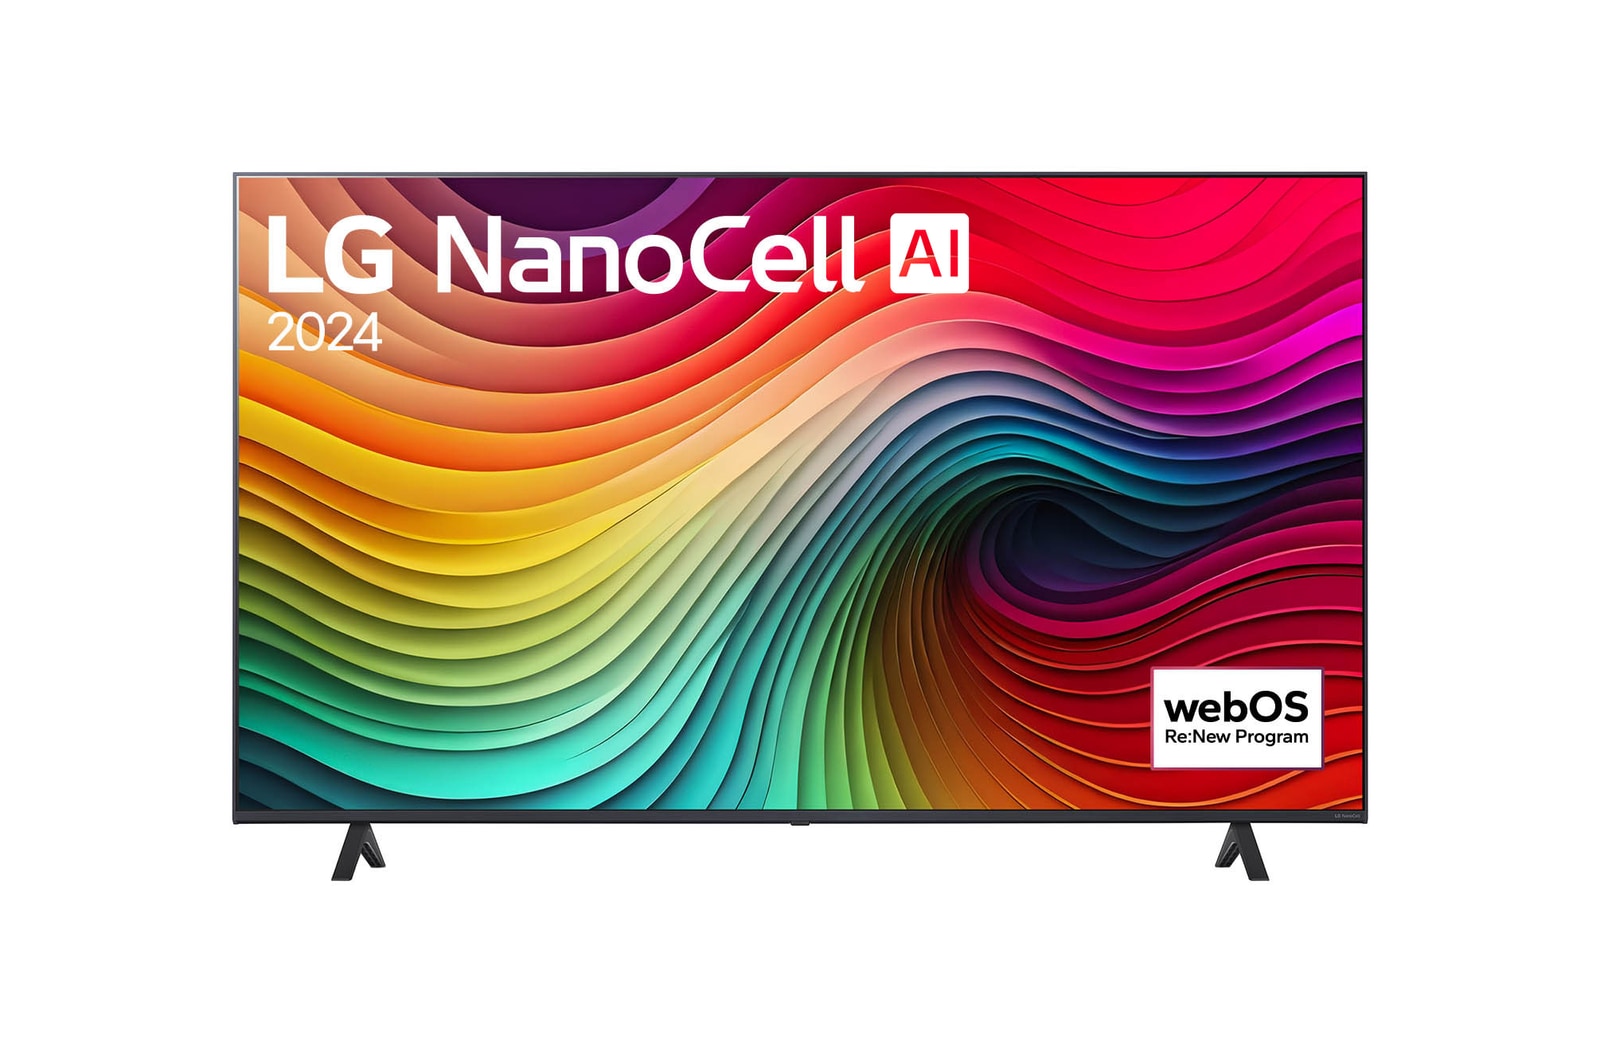 LG 55" LG NanoCell AI NANO81 4K Smart TV 2024, 55NANO81T6A